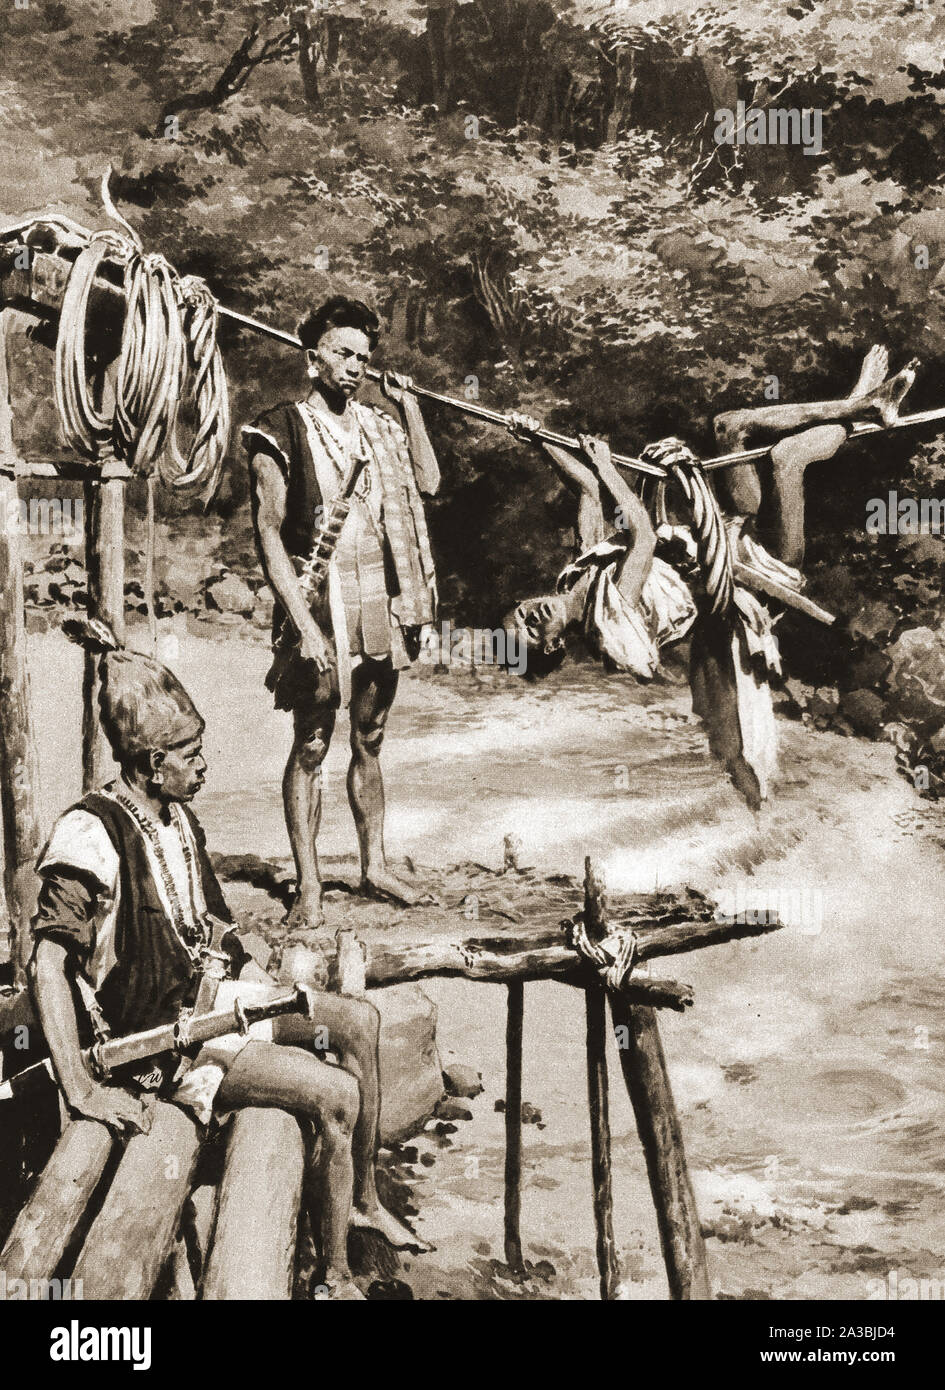 Ein frühes Beispiel für einen Ring Brücke durch die ABOR (Arunachal Pradesh) Stamm Flüssen im Nordosten Indiens zu überqueren, es bestand aus einem ständigen Seilverbindung über einen Fluss oder Bach mit einem geflochtenen Seil oder Reben Ring verwendet den Insassen zu halten, wie er oder sie sich entlang gezogen. Stockfoto